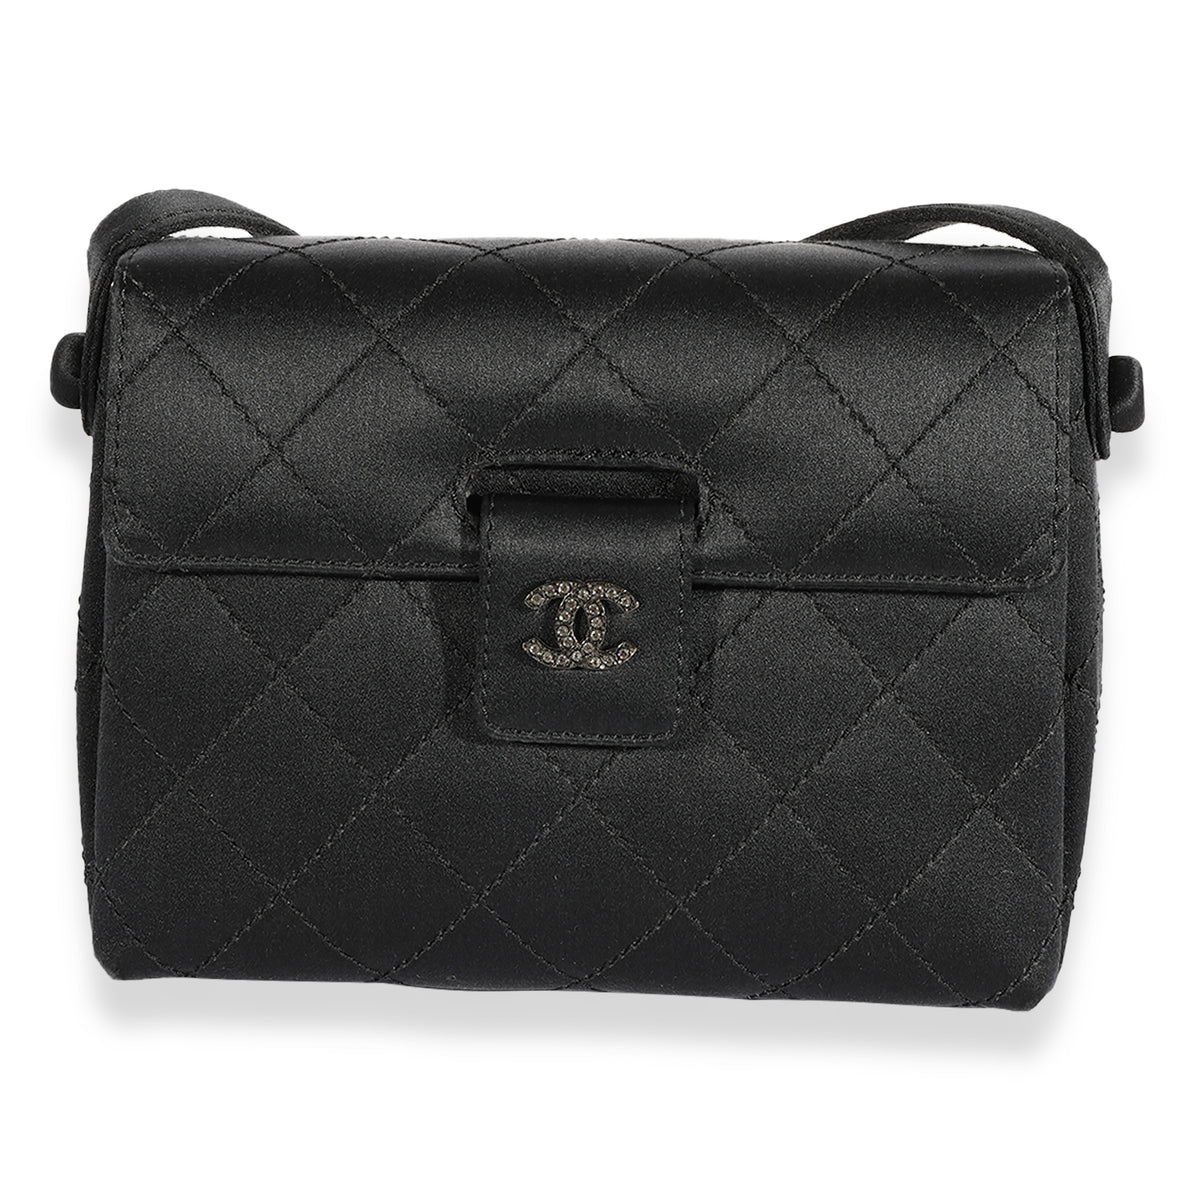 Chanel Vintage Black Quilted Satin Evening Bag, myGemma